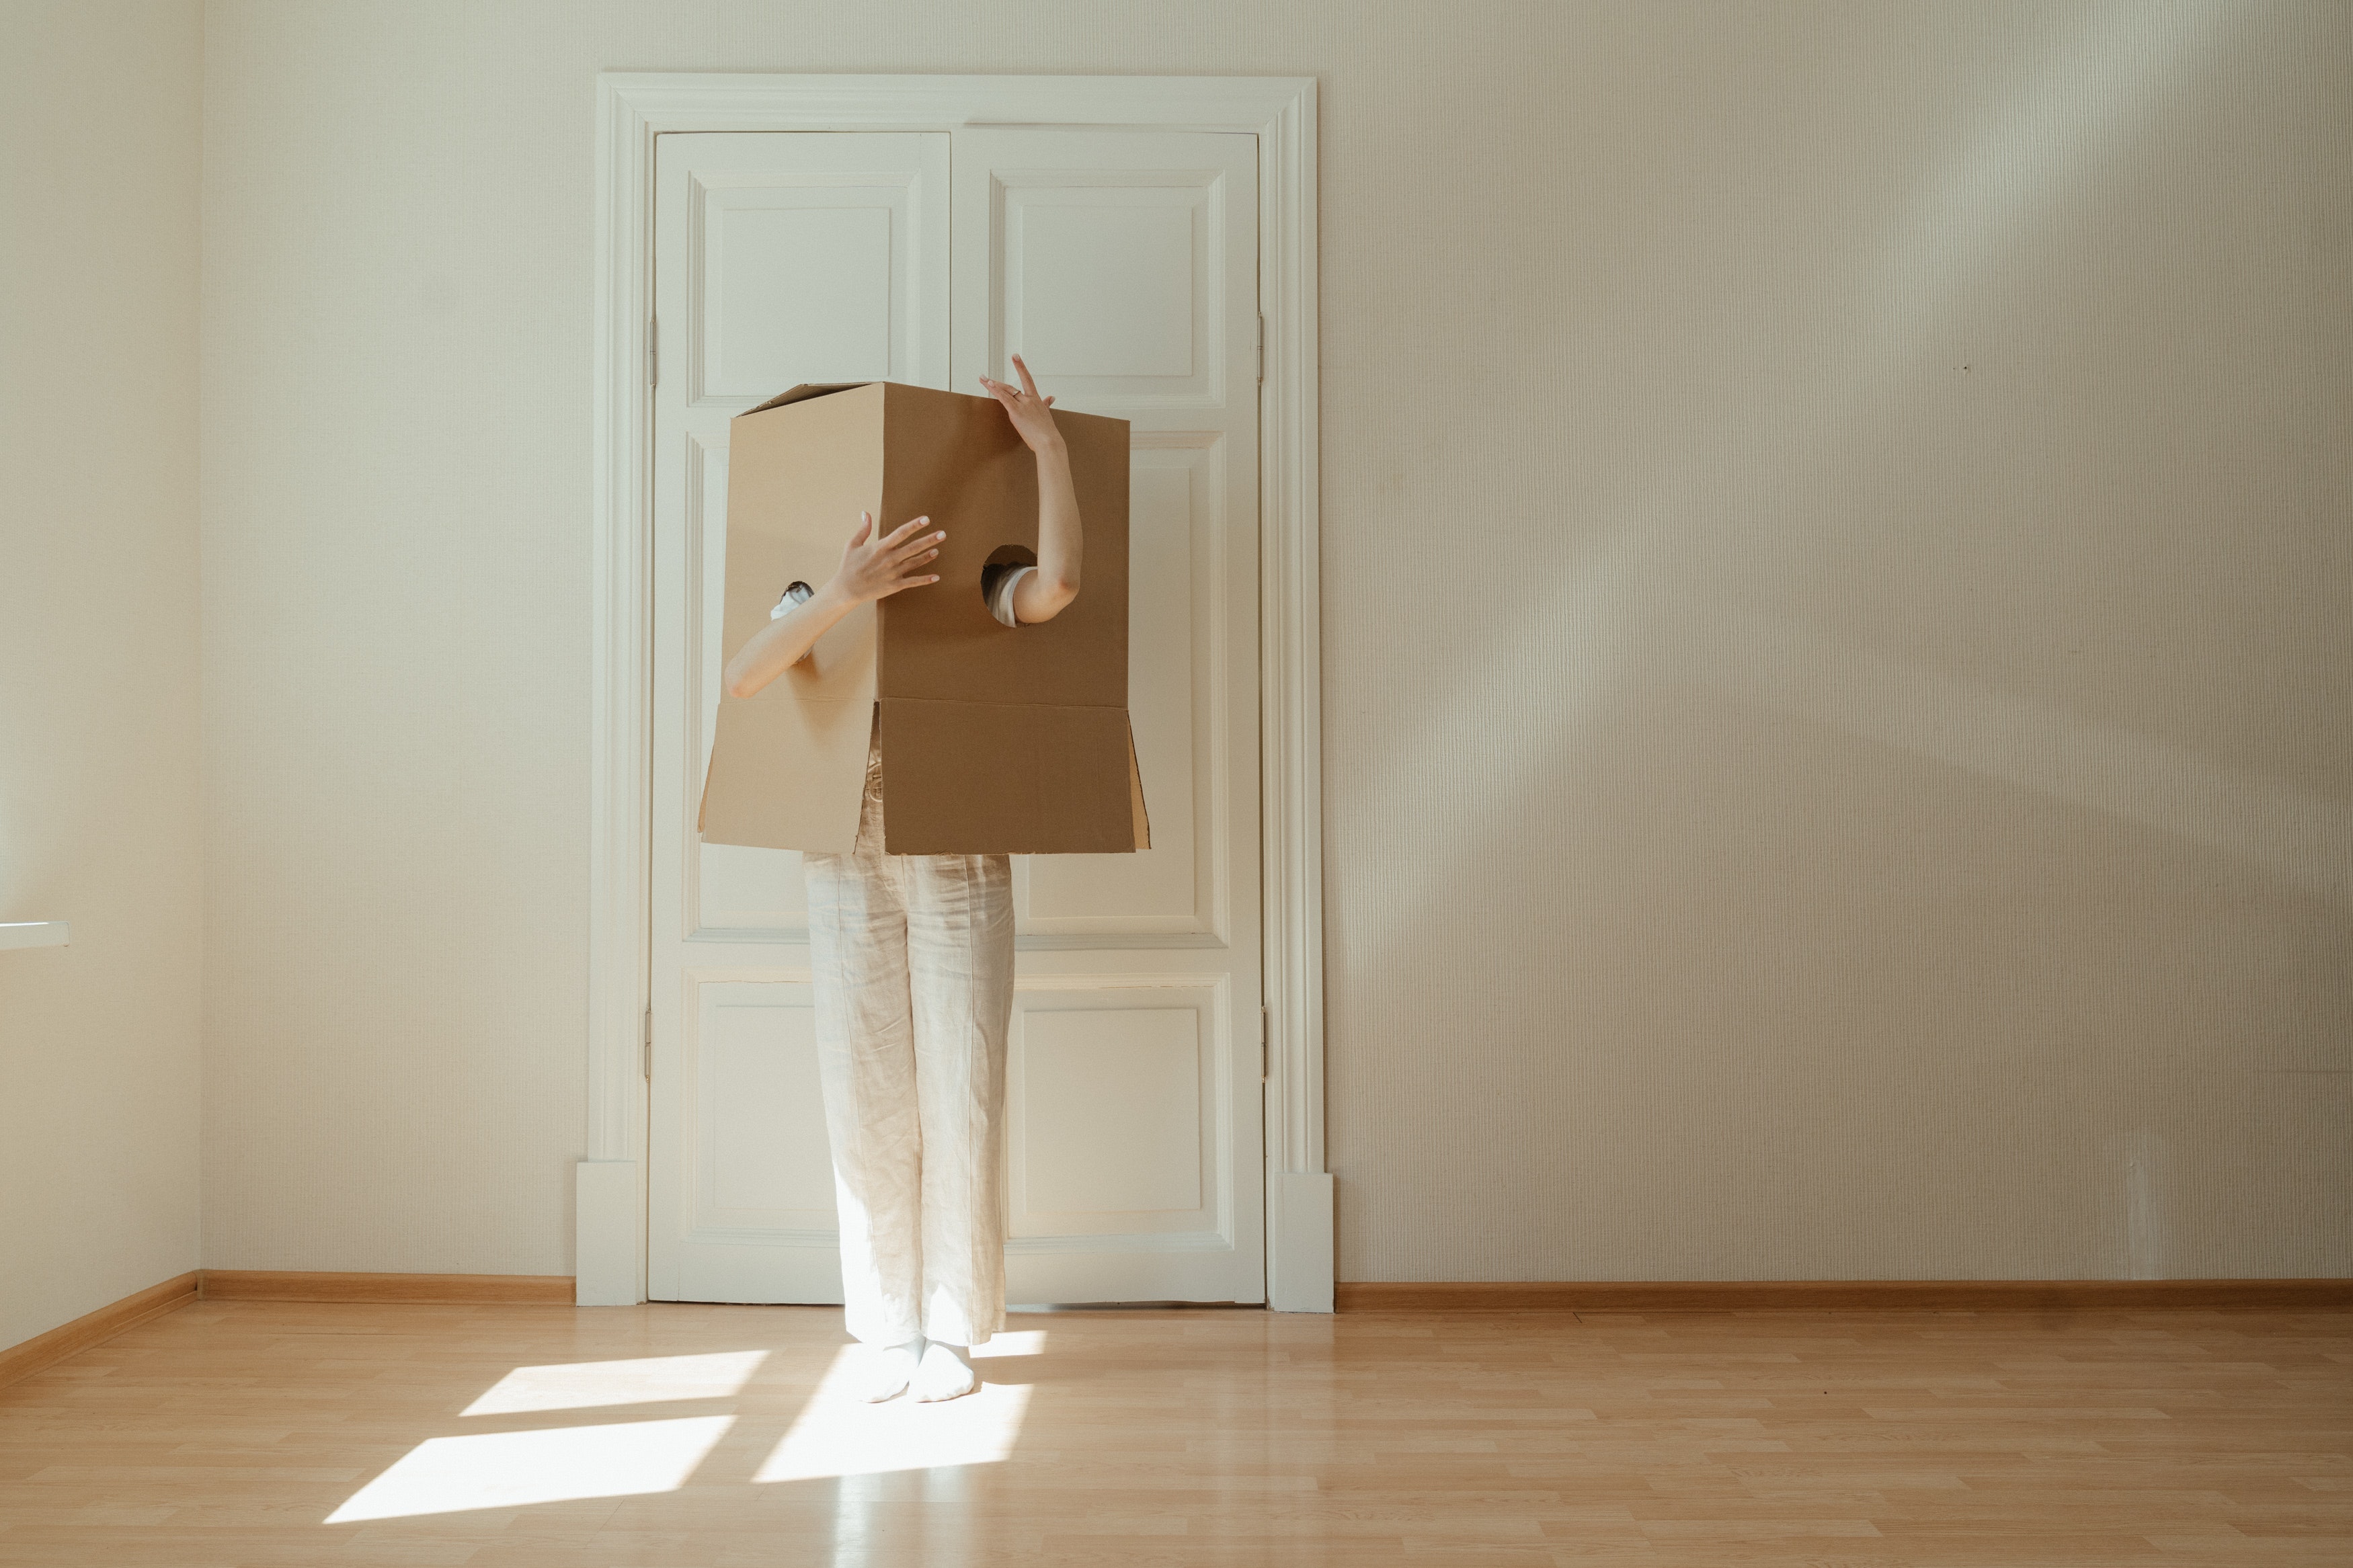 Eine Person steht in einer leeren Wohnung mit einem Karton über ihrem Kopf.